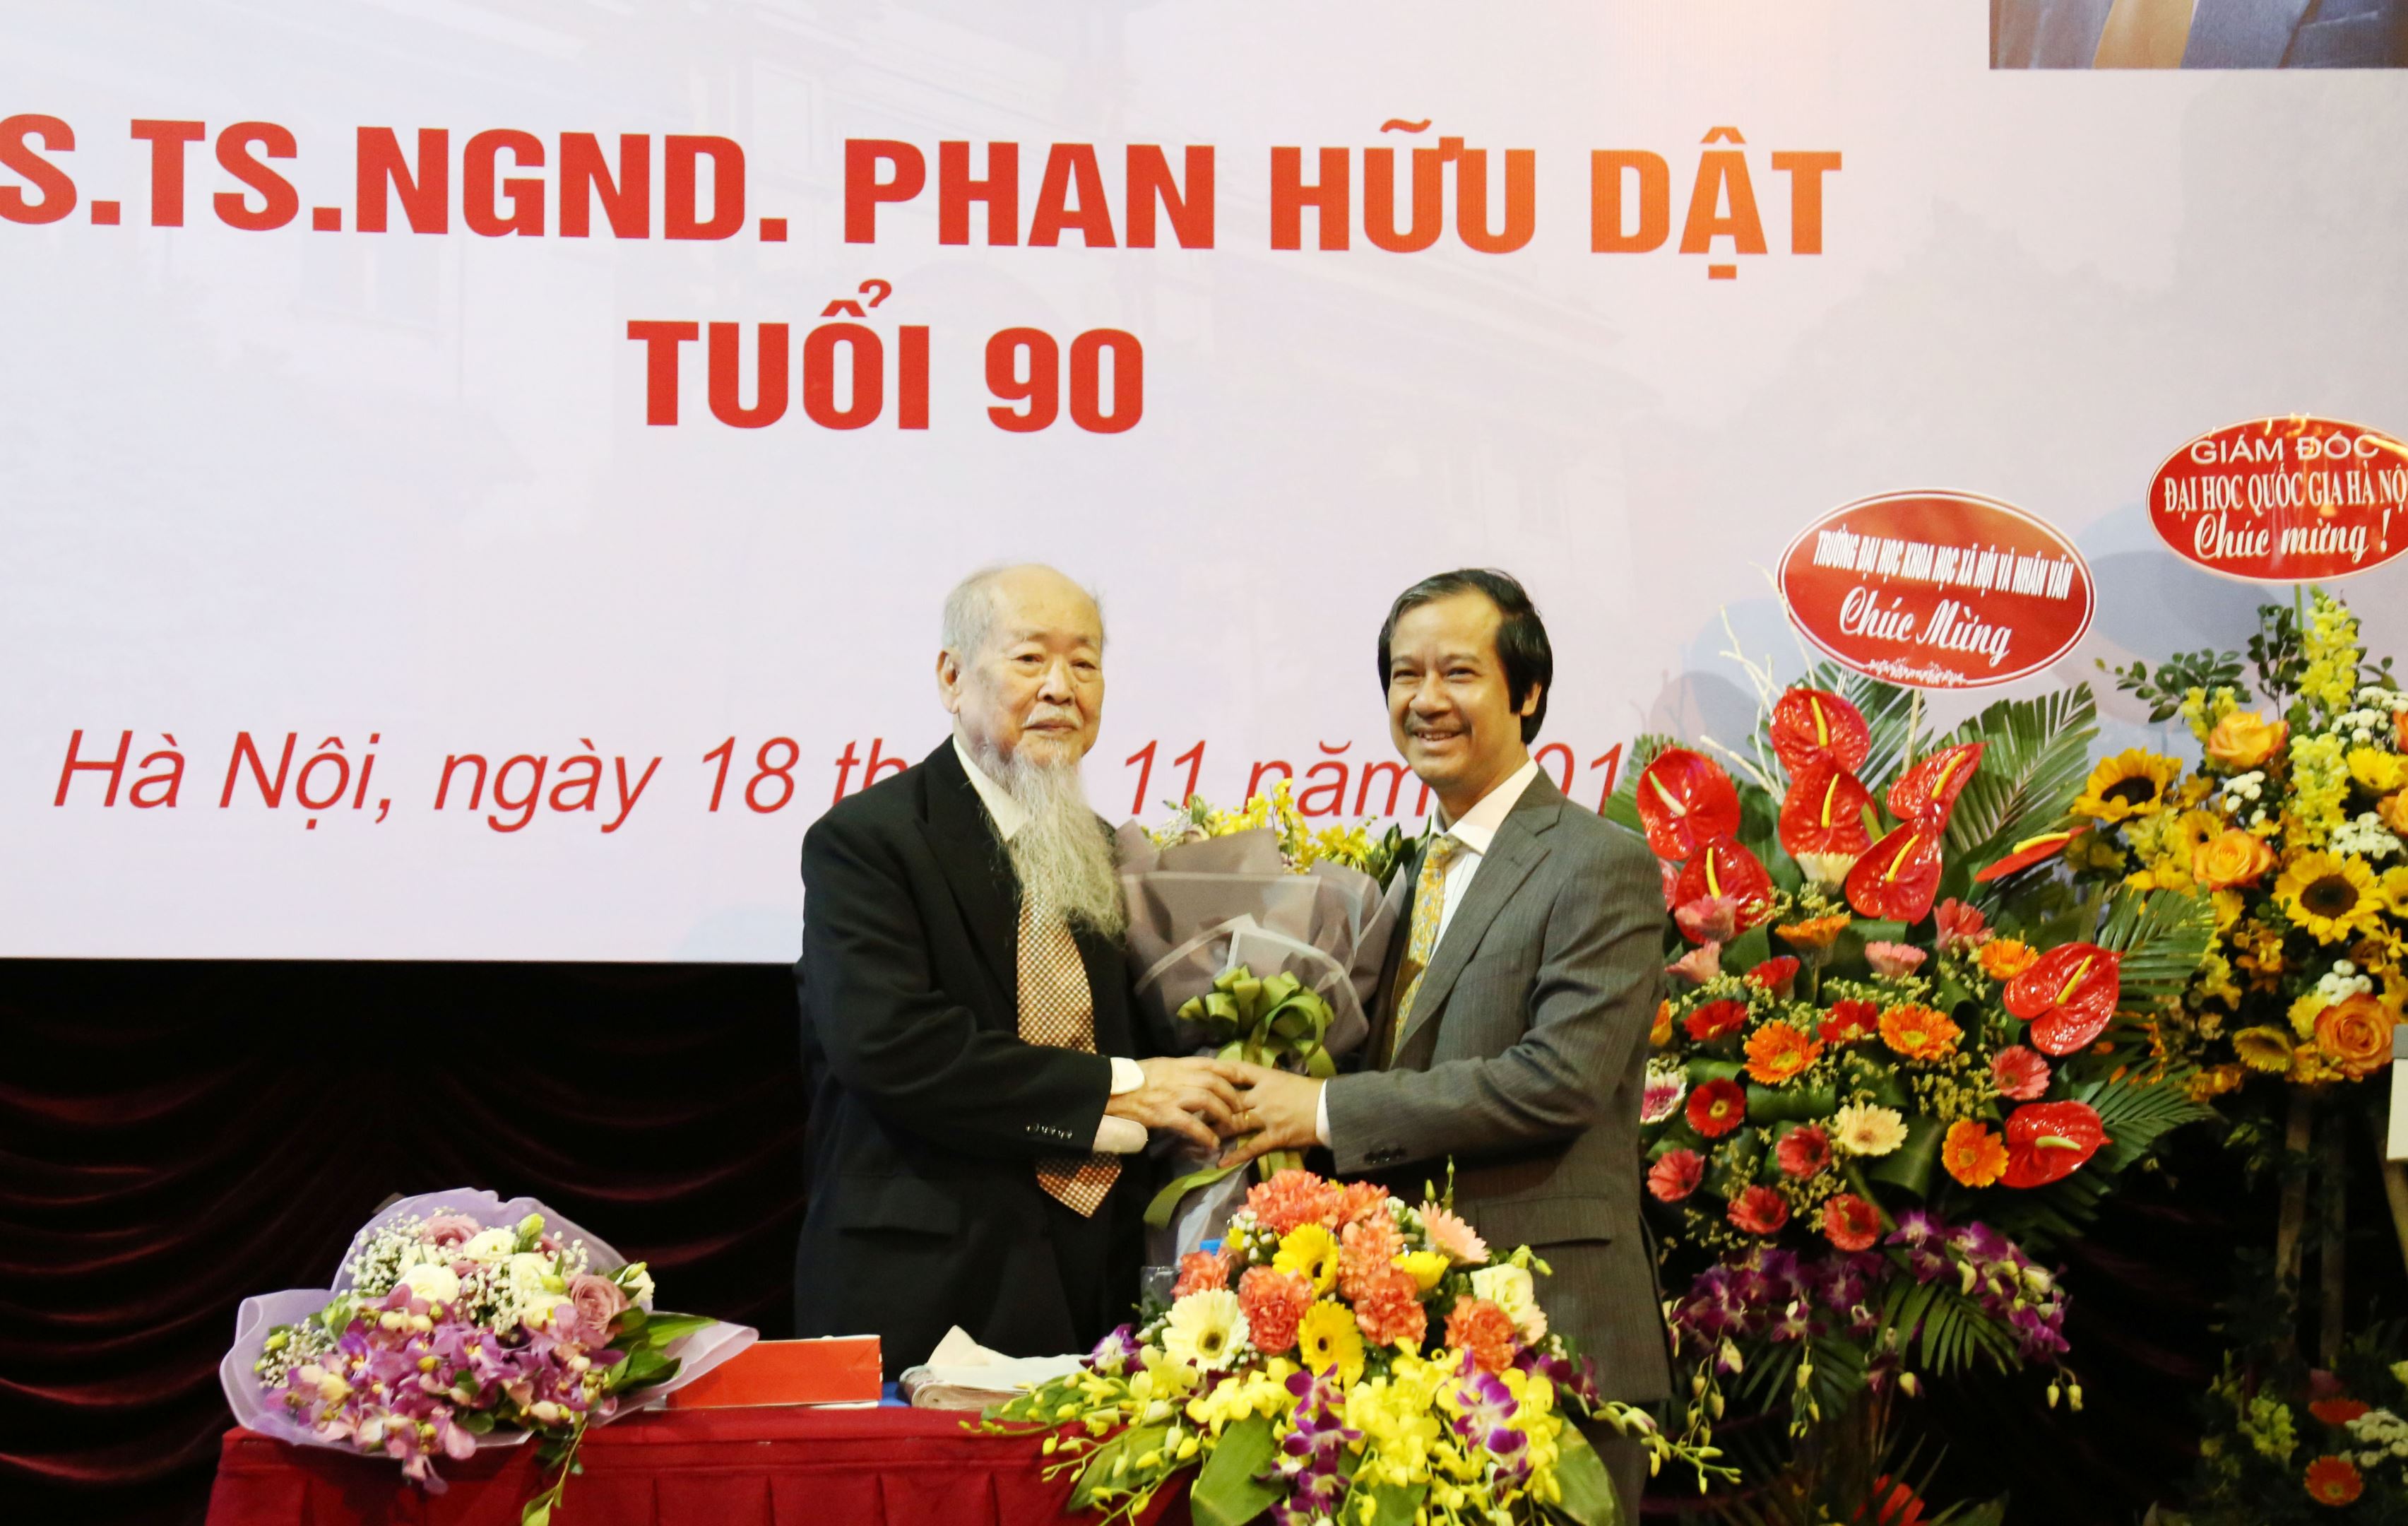 Mừng GS.NGND Phan Hữu Dật tuổi 90